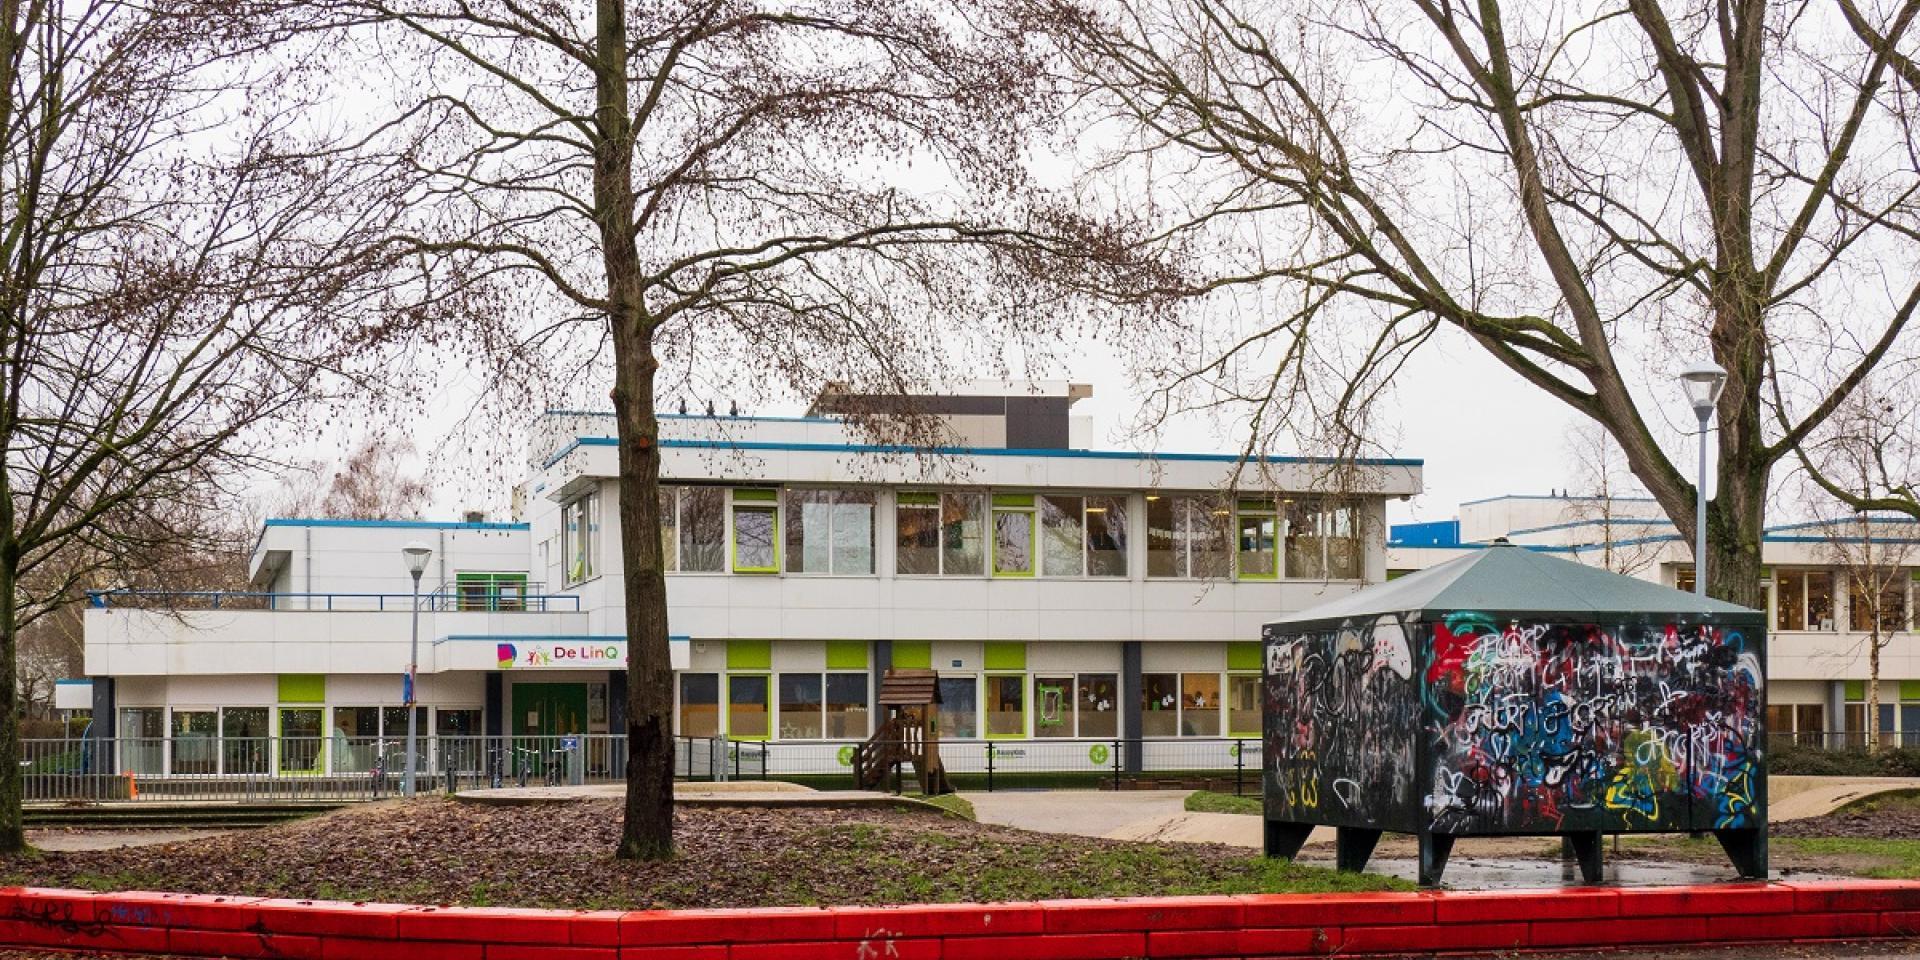 Basisschool De LinQ in Nieuw-Vennep